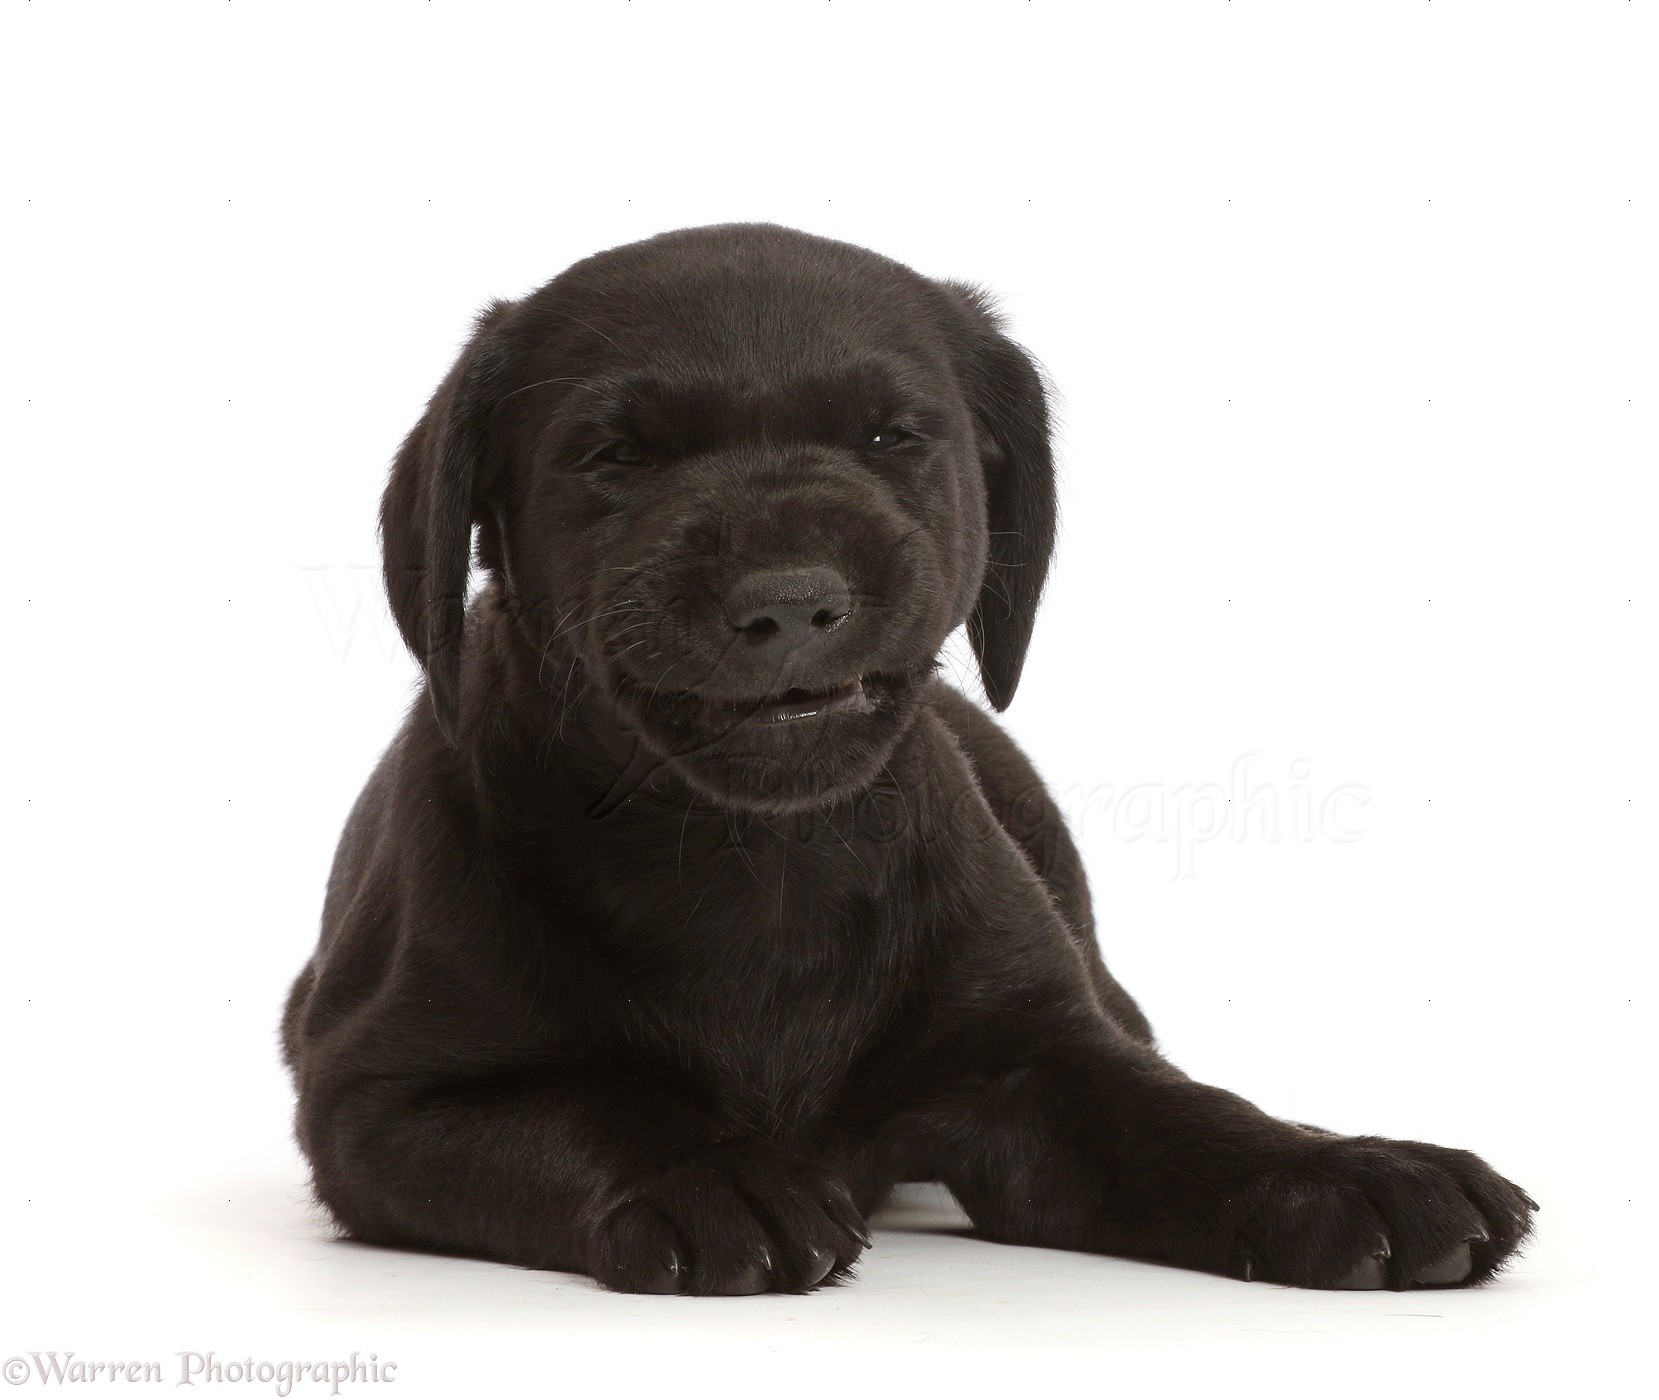 Dog: Black Labrador Retriever puppy, making a funny face photo WP48110